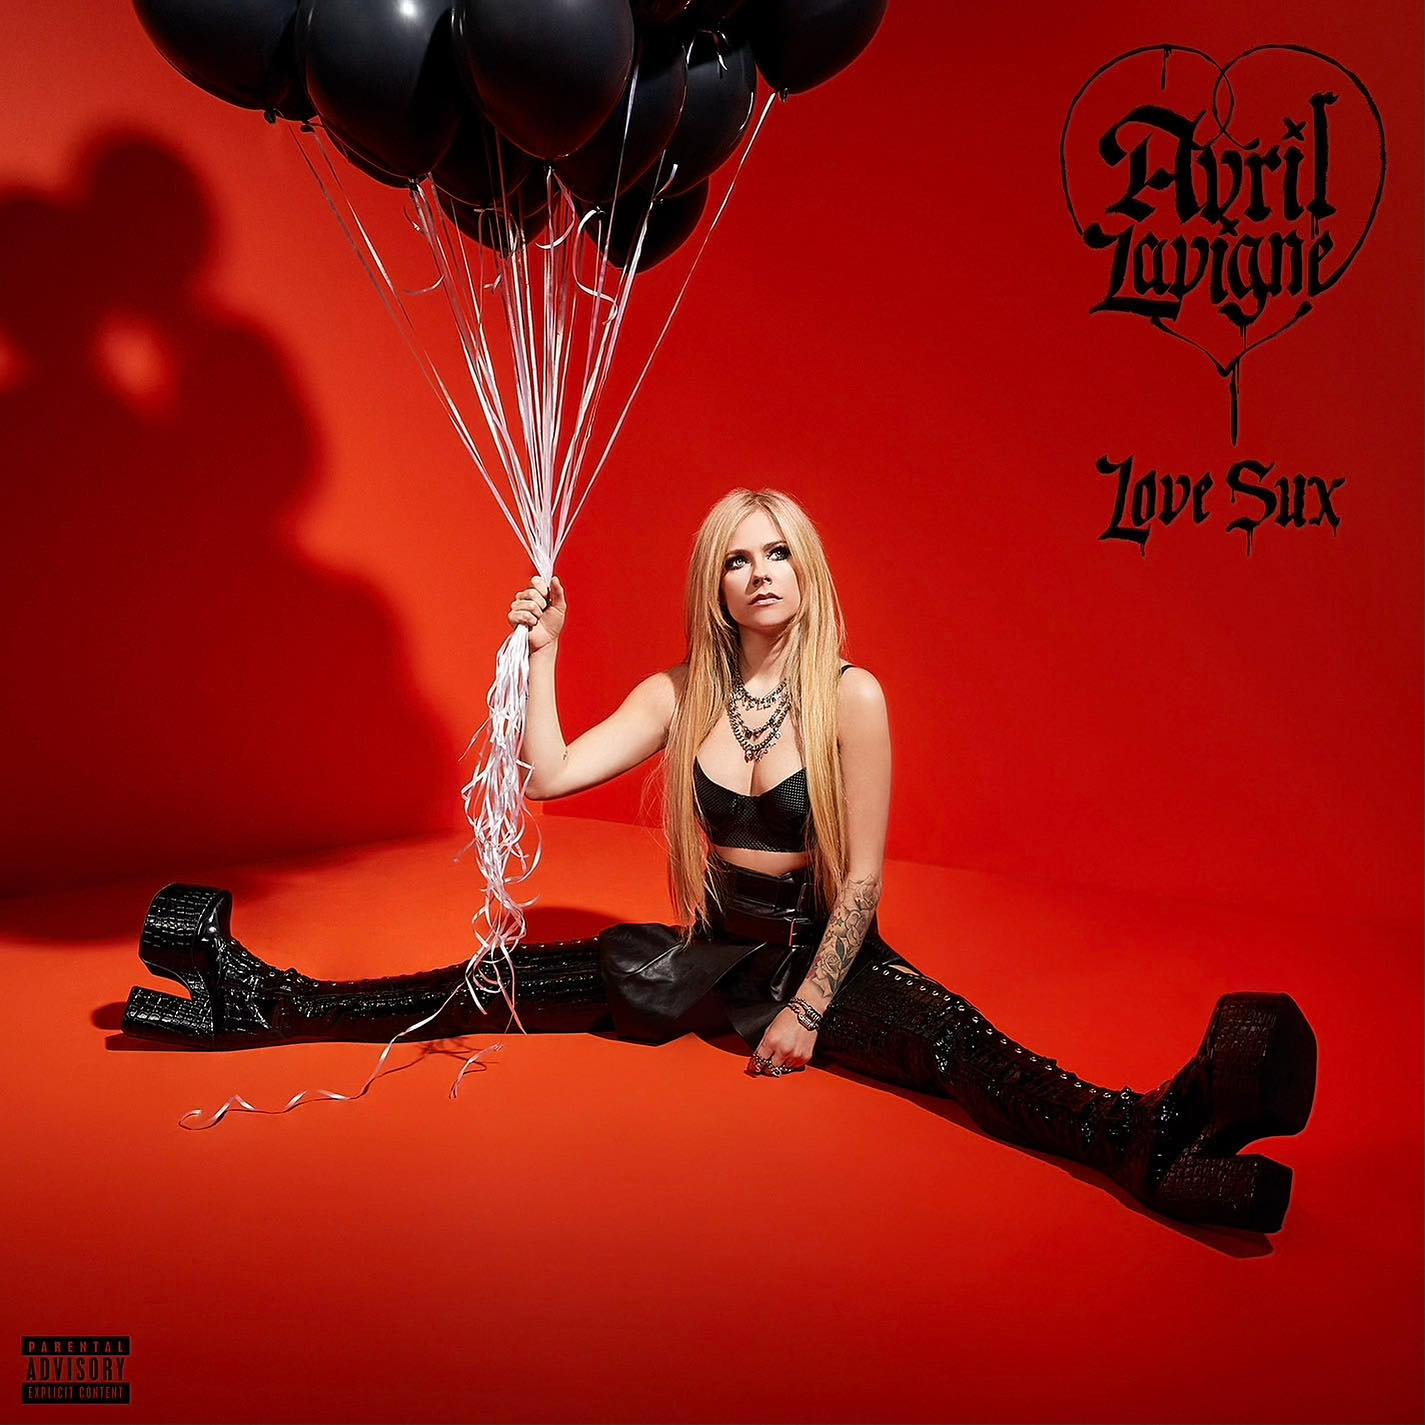 Avril Lavigne Announces her Seventh Album "Love Sux"